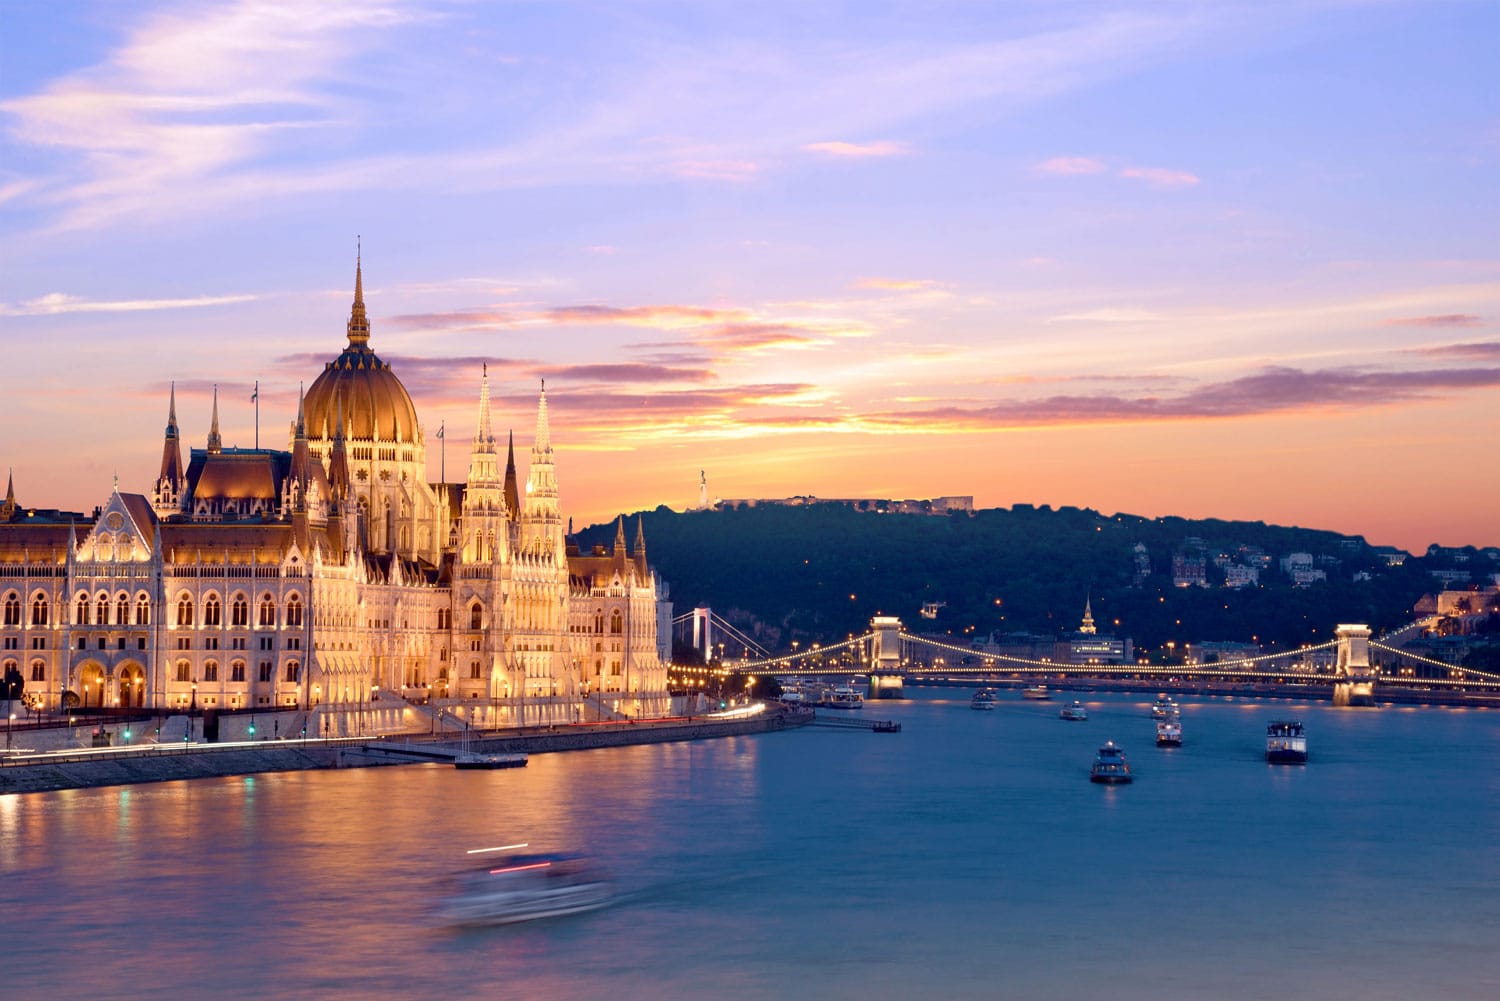 Pemandangan Parlemen yang indah dan jembatan di atas Danube di Budapest saat matahari terbenam